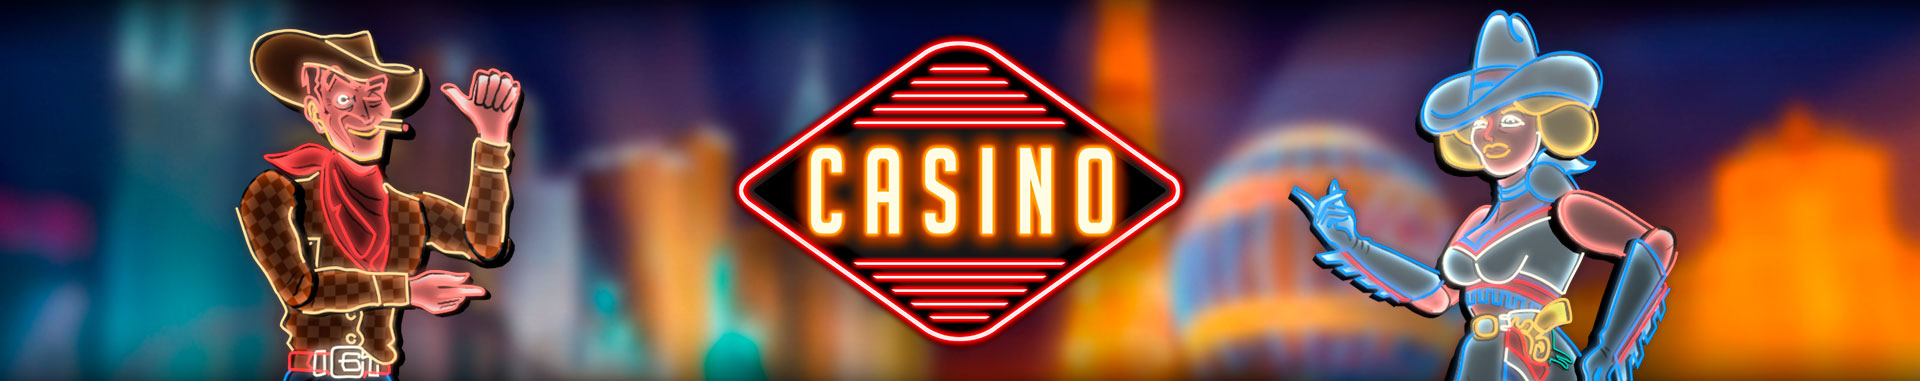 Video Bingo Online Las Vegas